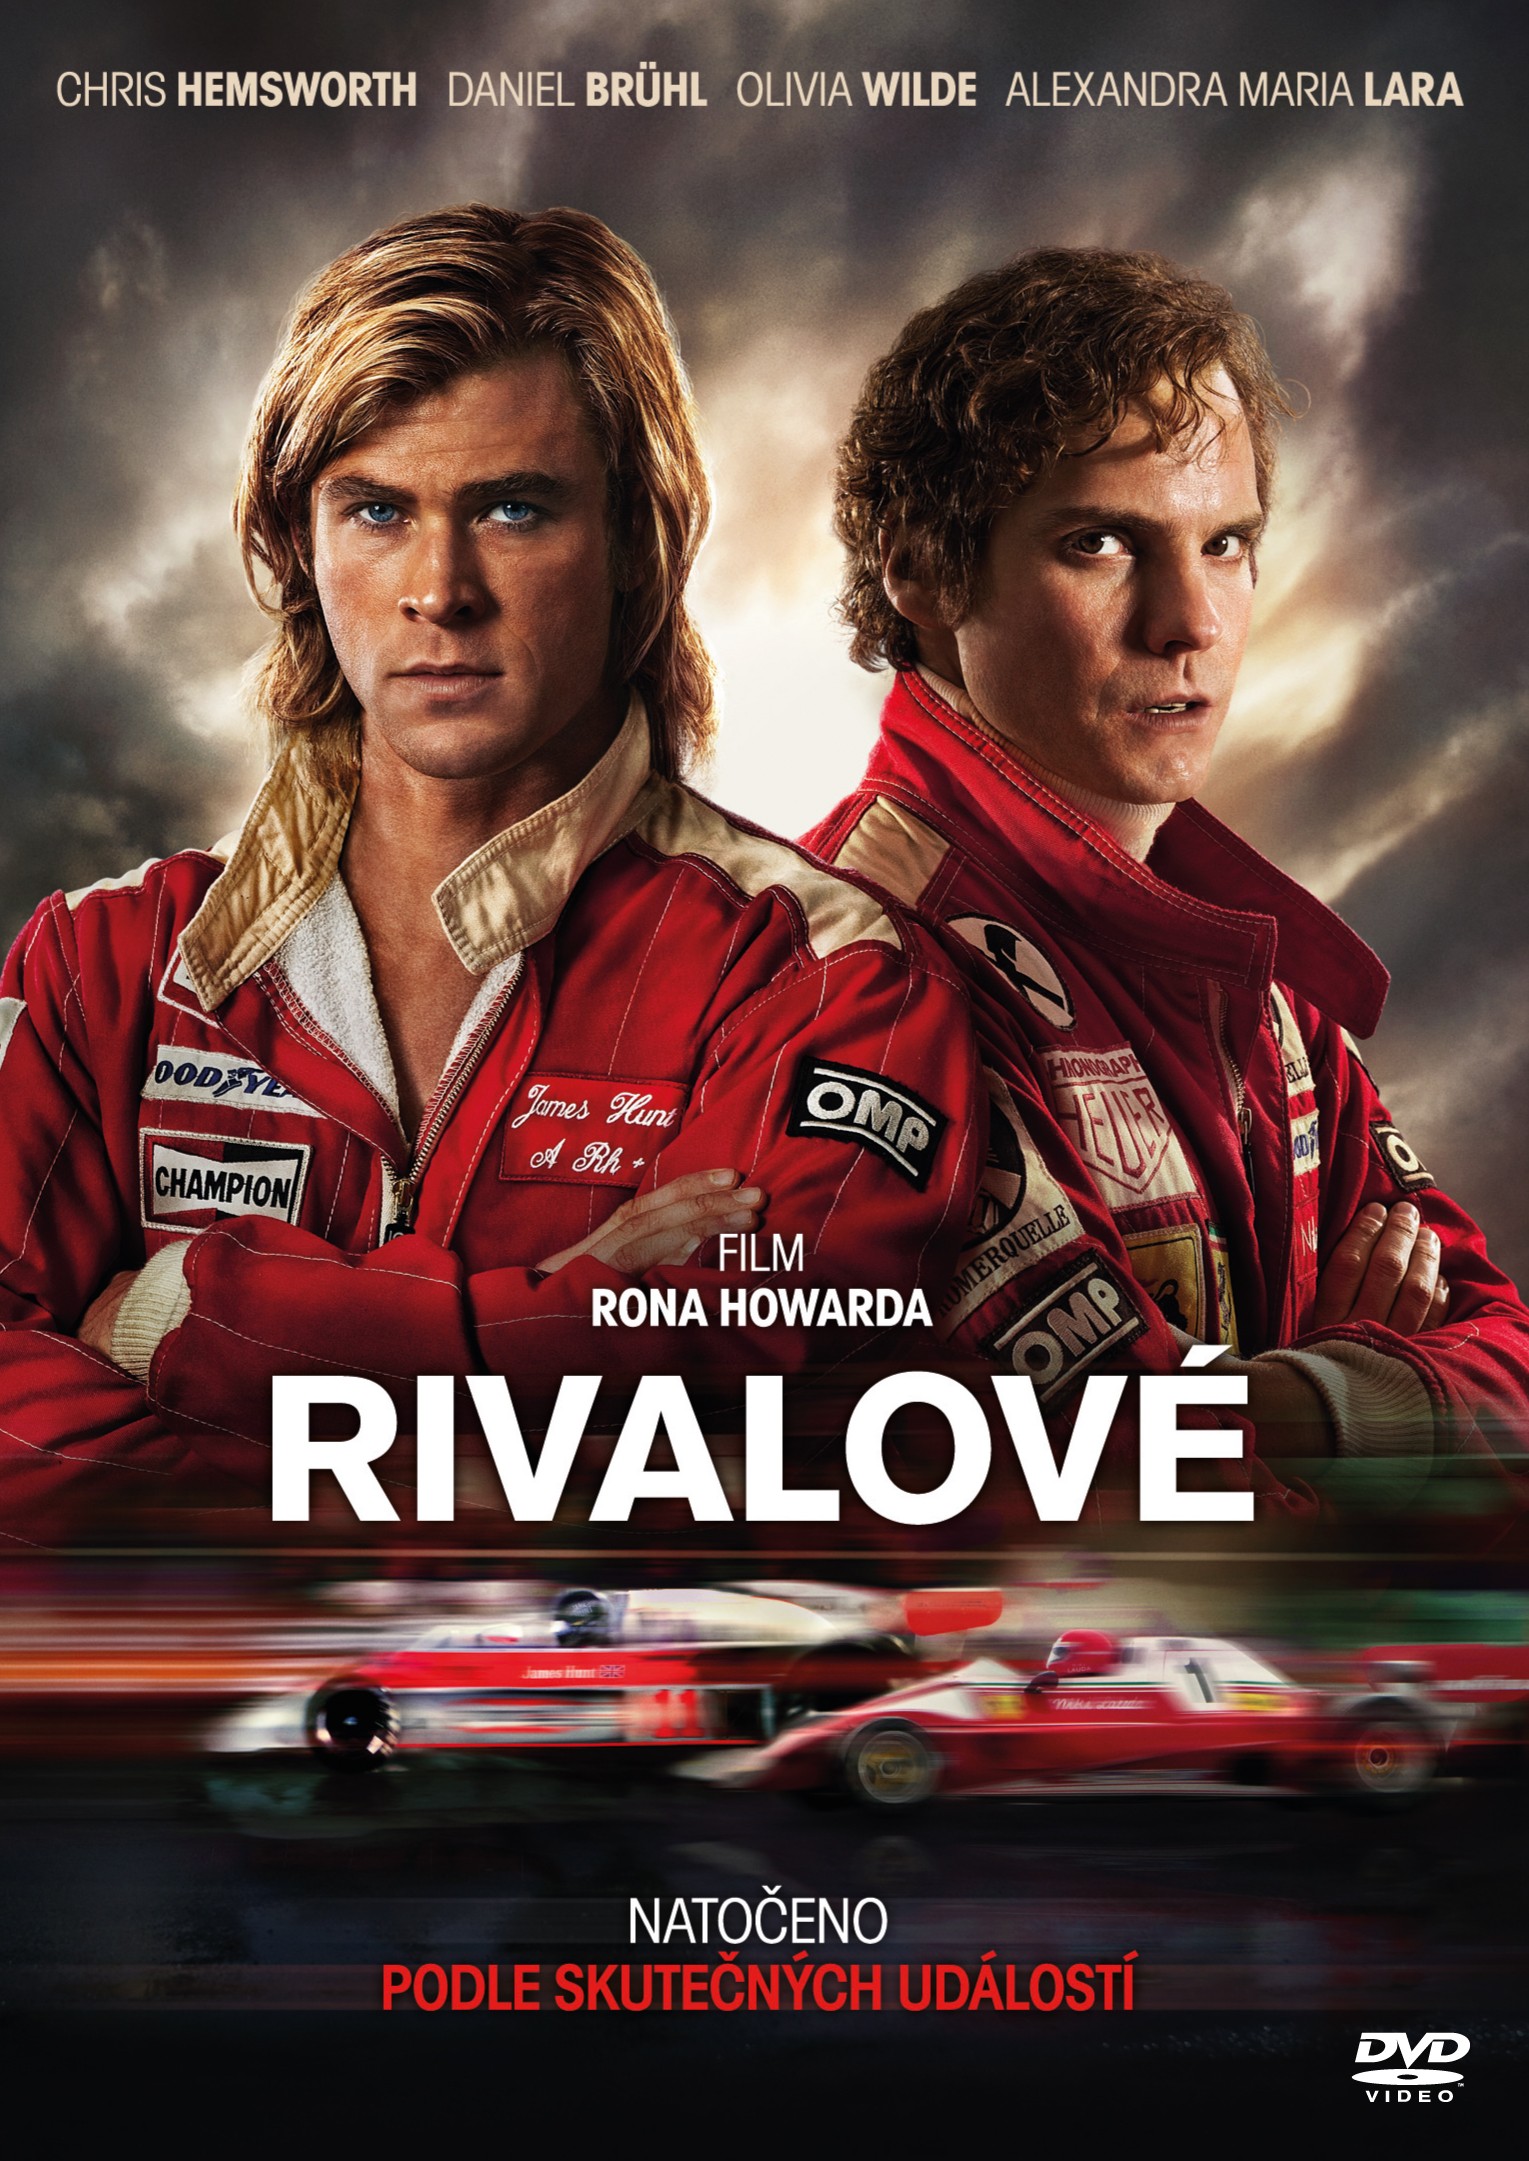 Stiahni si HD Filmy Rivalove / Rush (2013)(CZ/EN)[720p] = CSFD 90%